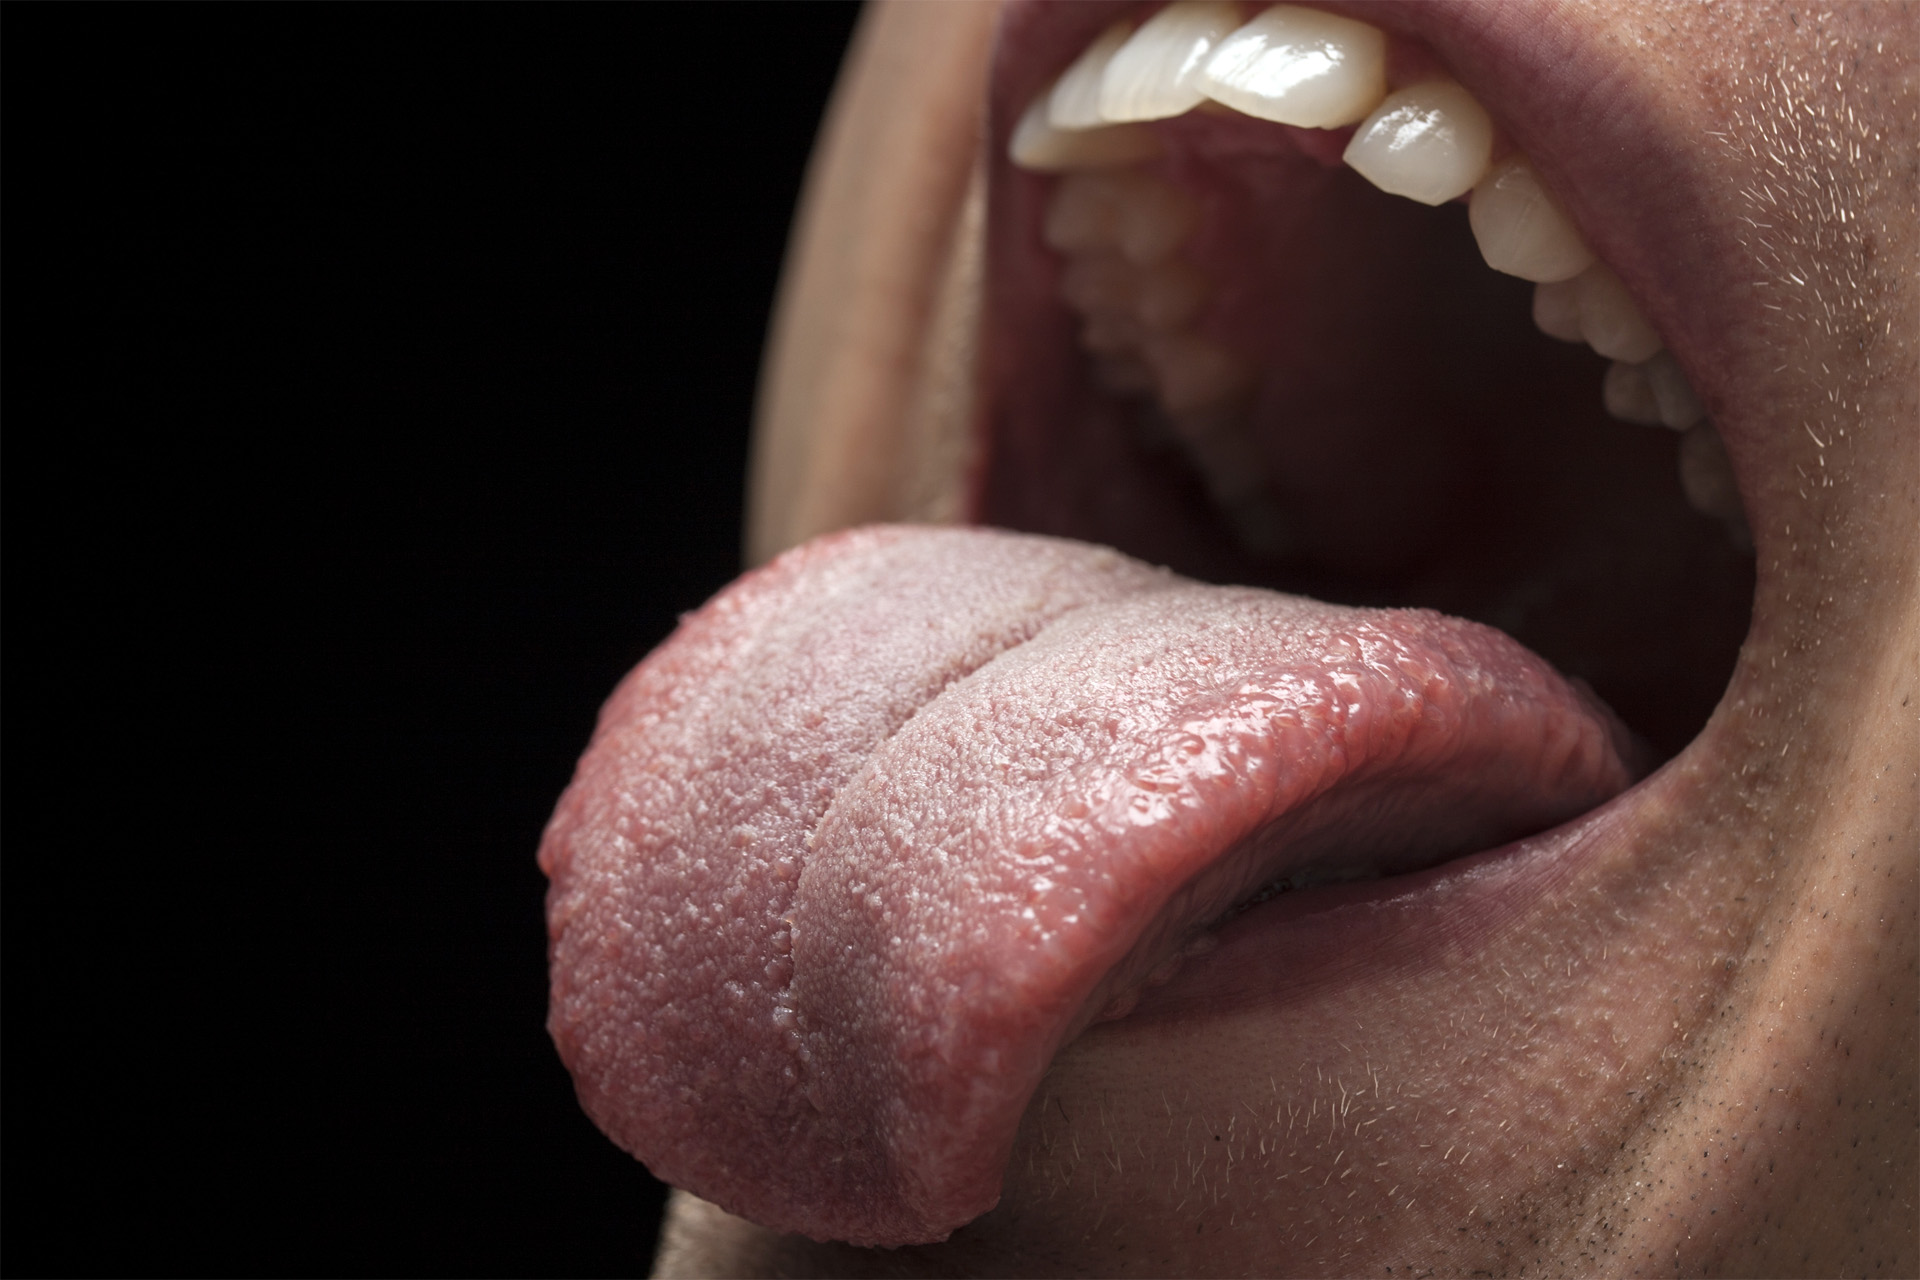 Mundhygiene-Tipp 3: Zungenbelag & Zungenreinigung